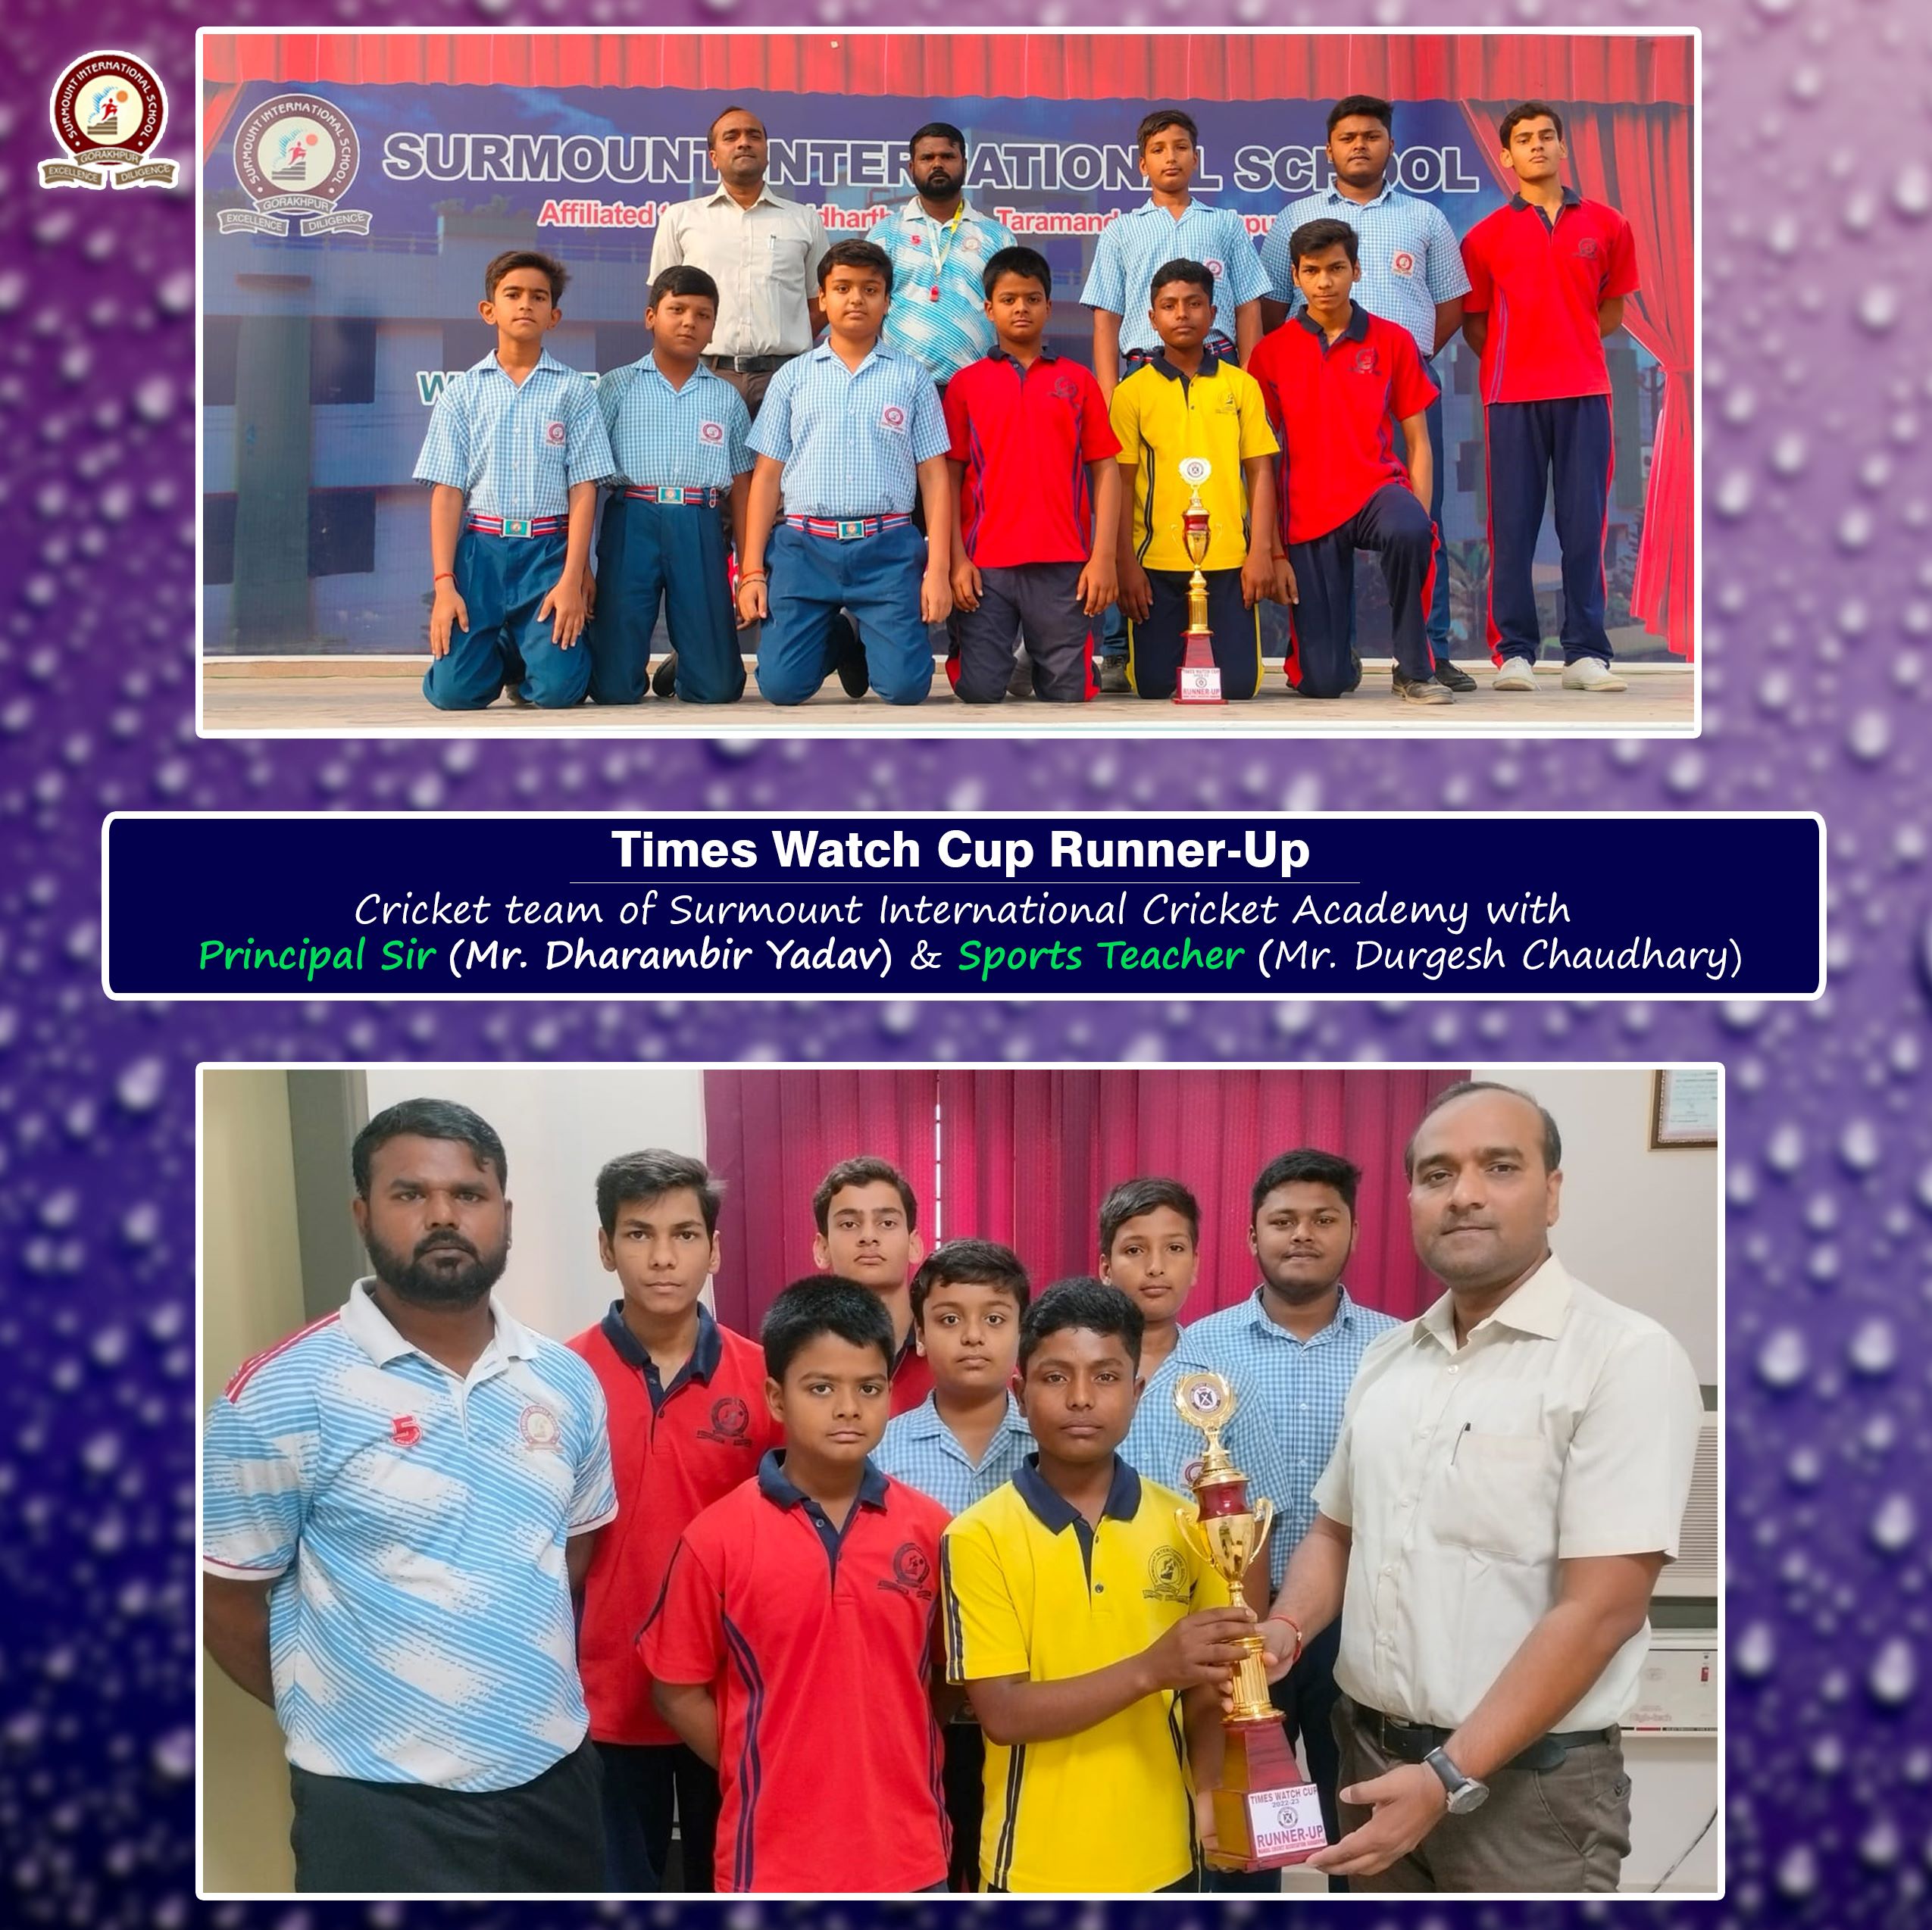 Times Watch Cup Runner-up Cricket team of Surmount International Cricket Academy